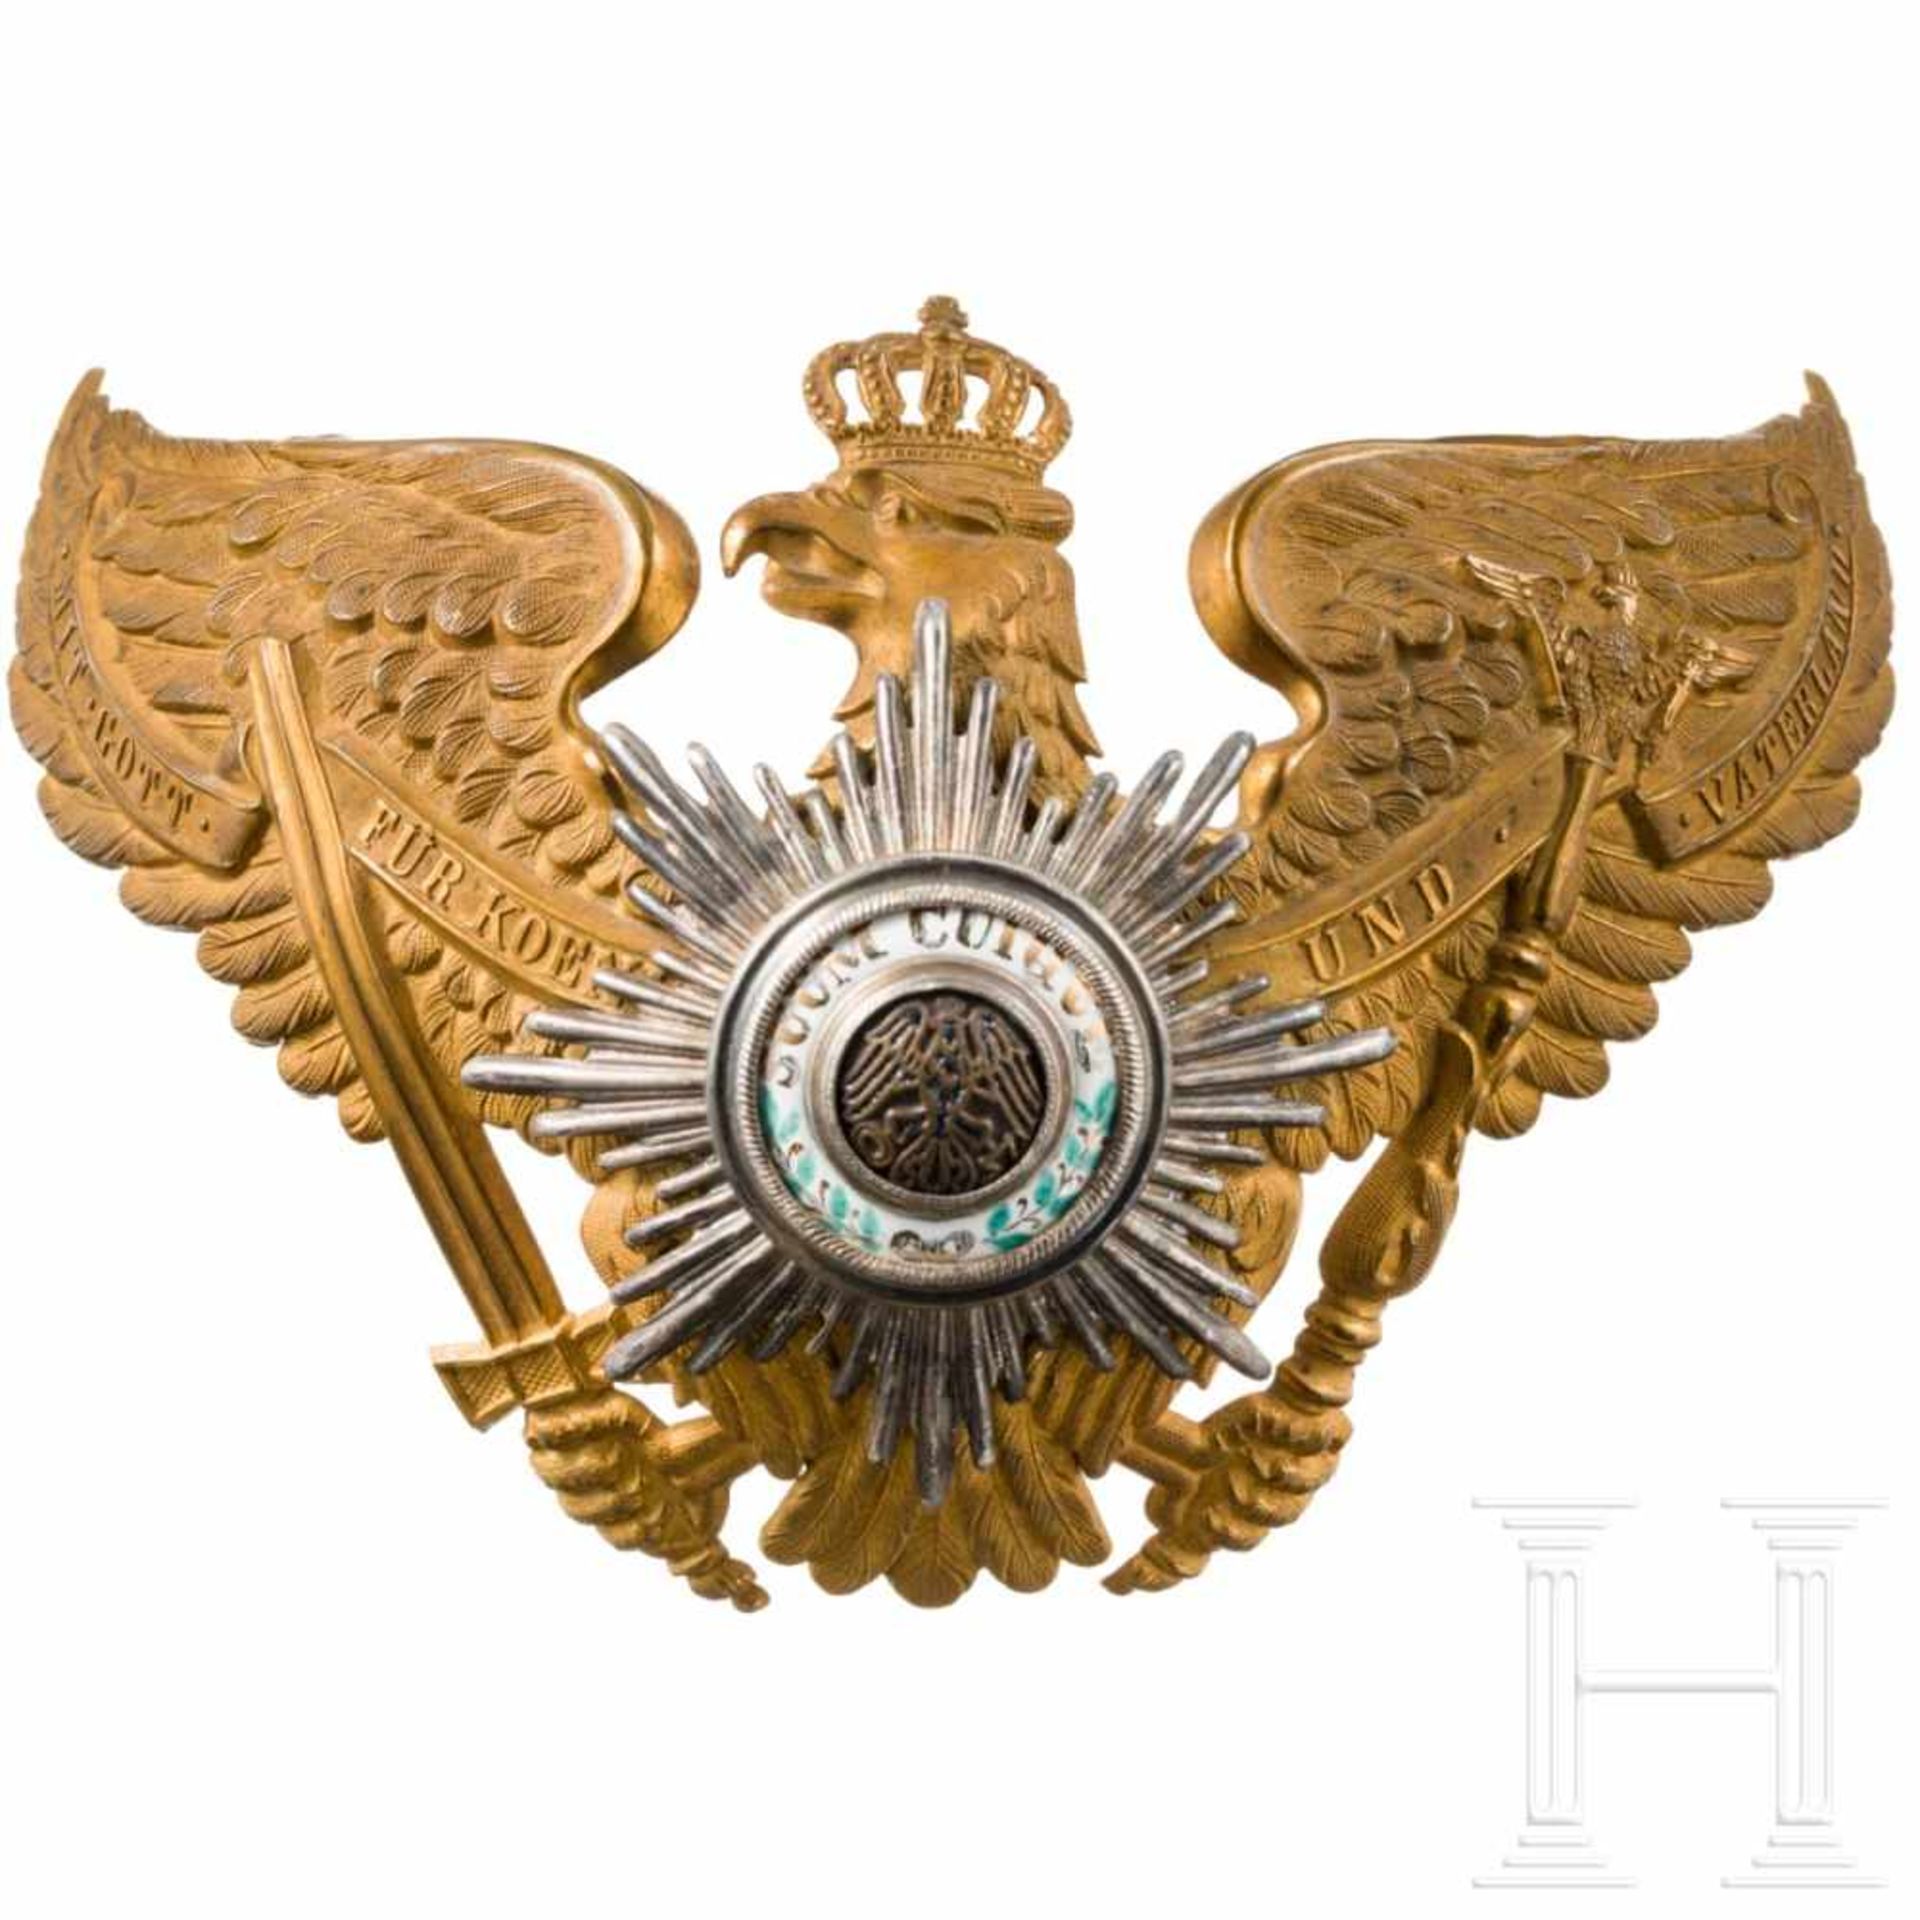 An eagle emblem for guard officers, circa 1900Messing, geprägt, frostig vergoldet mit polierten